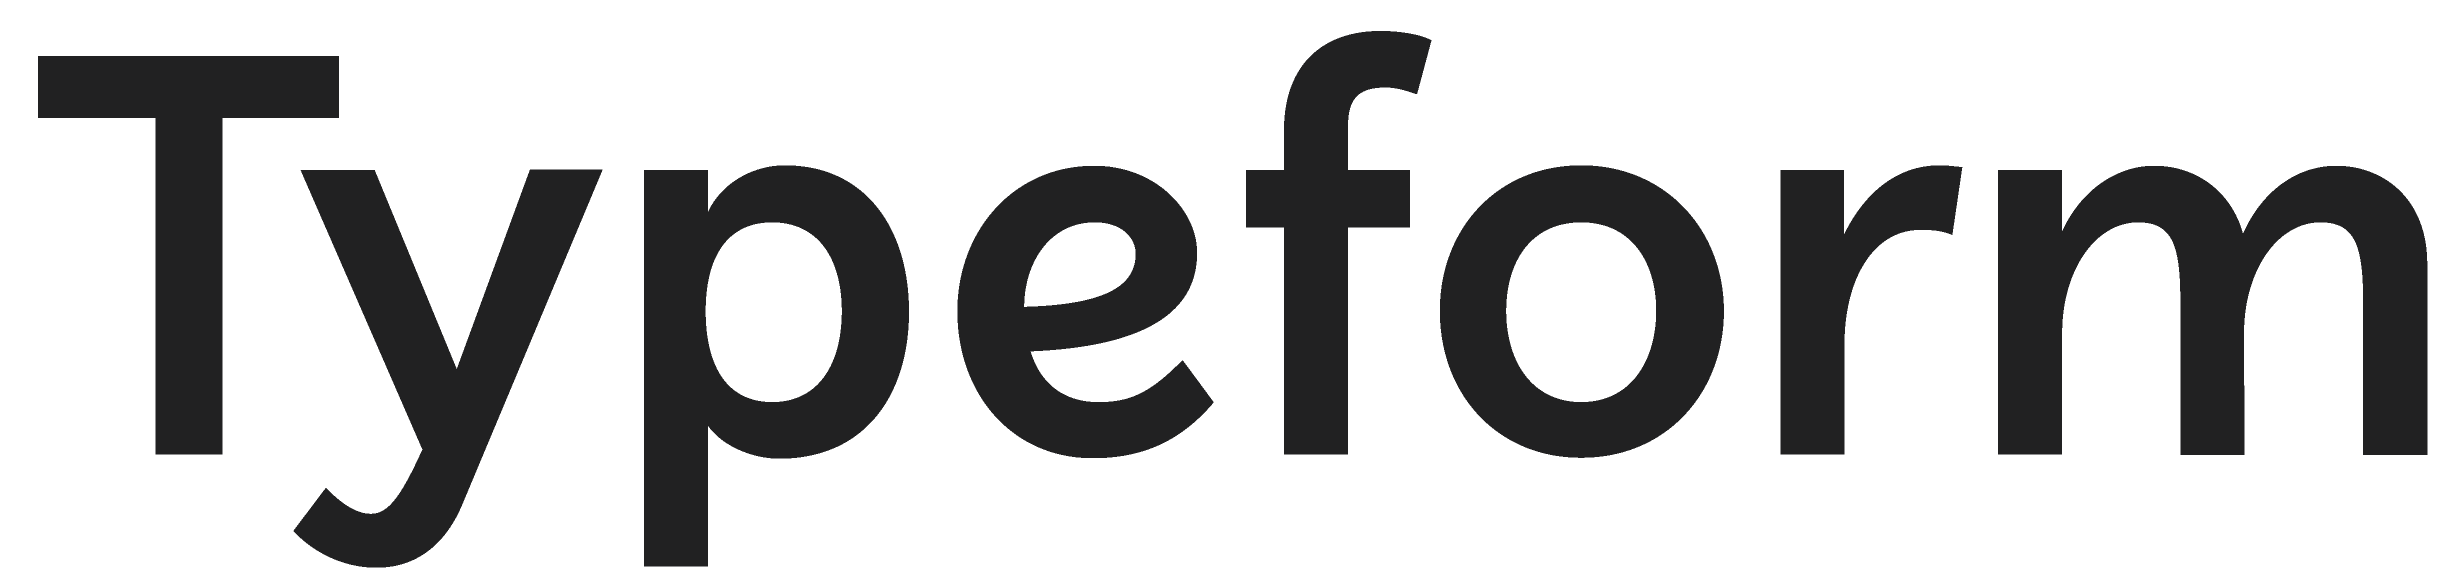 typeform logo black